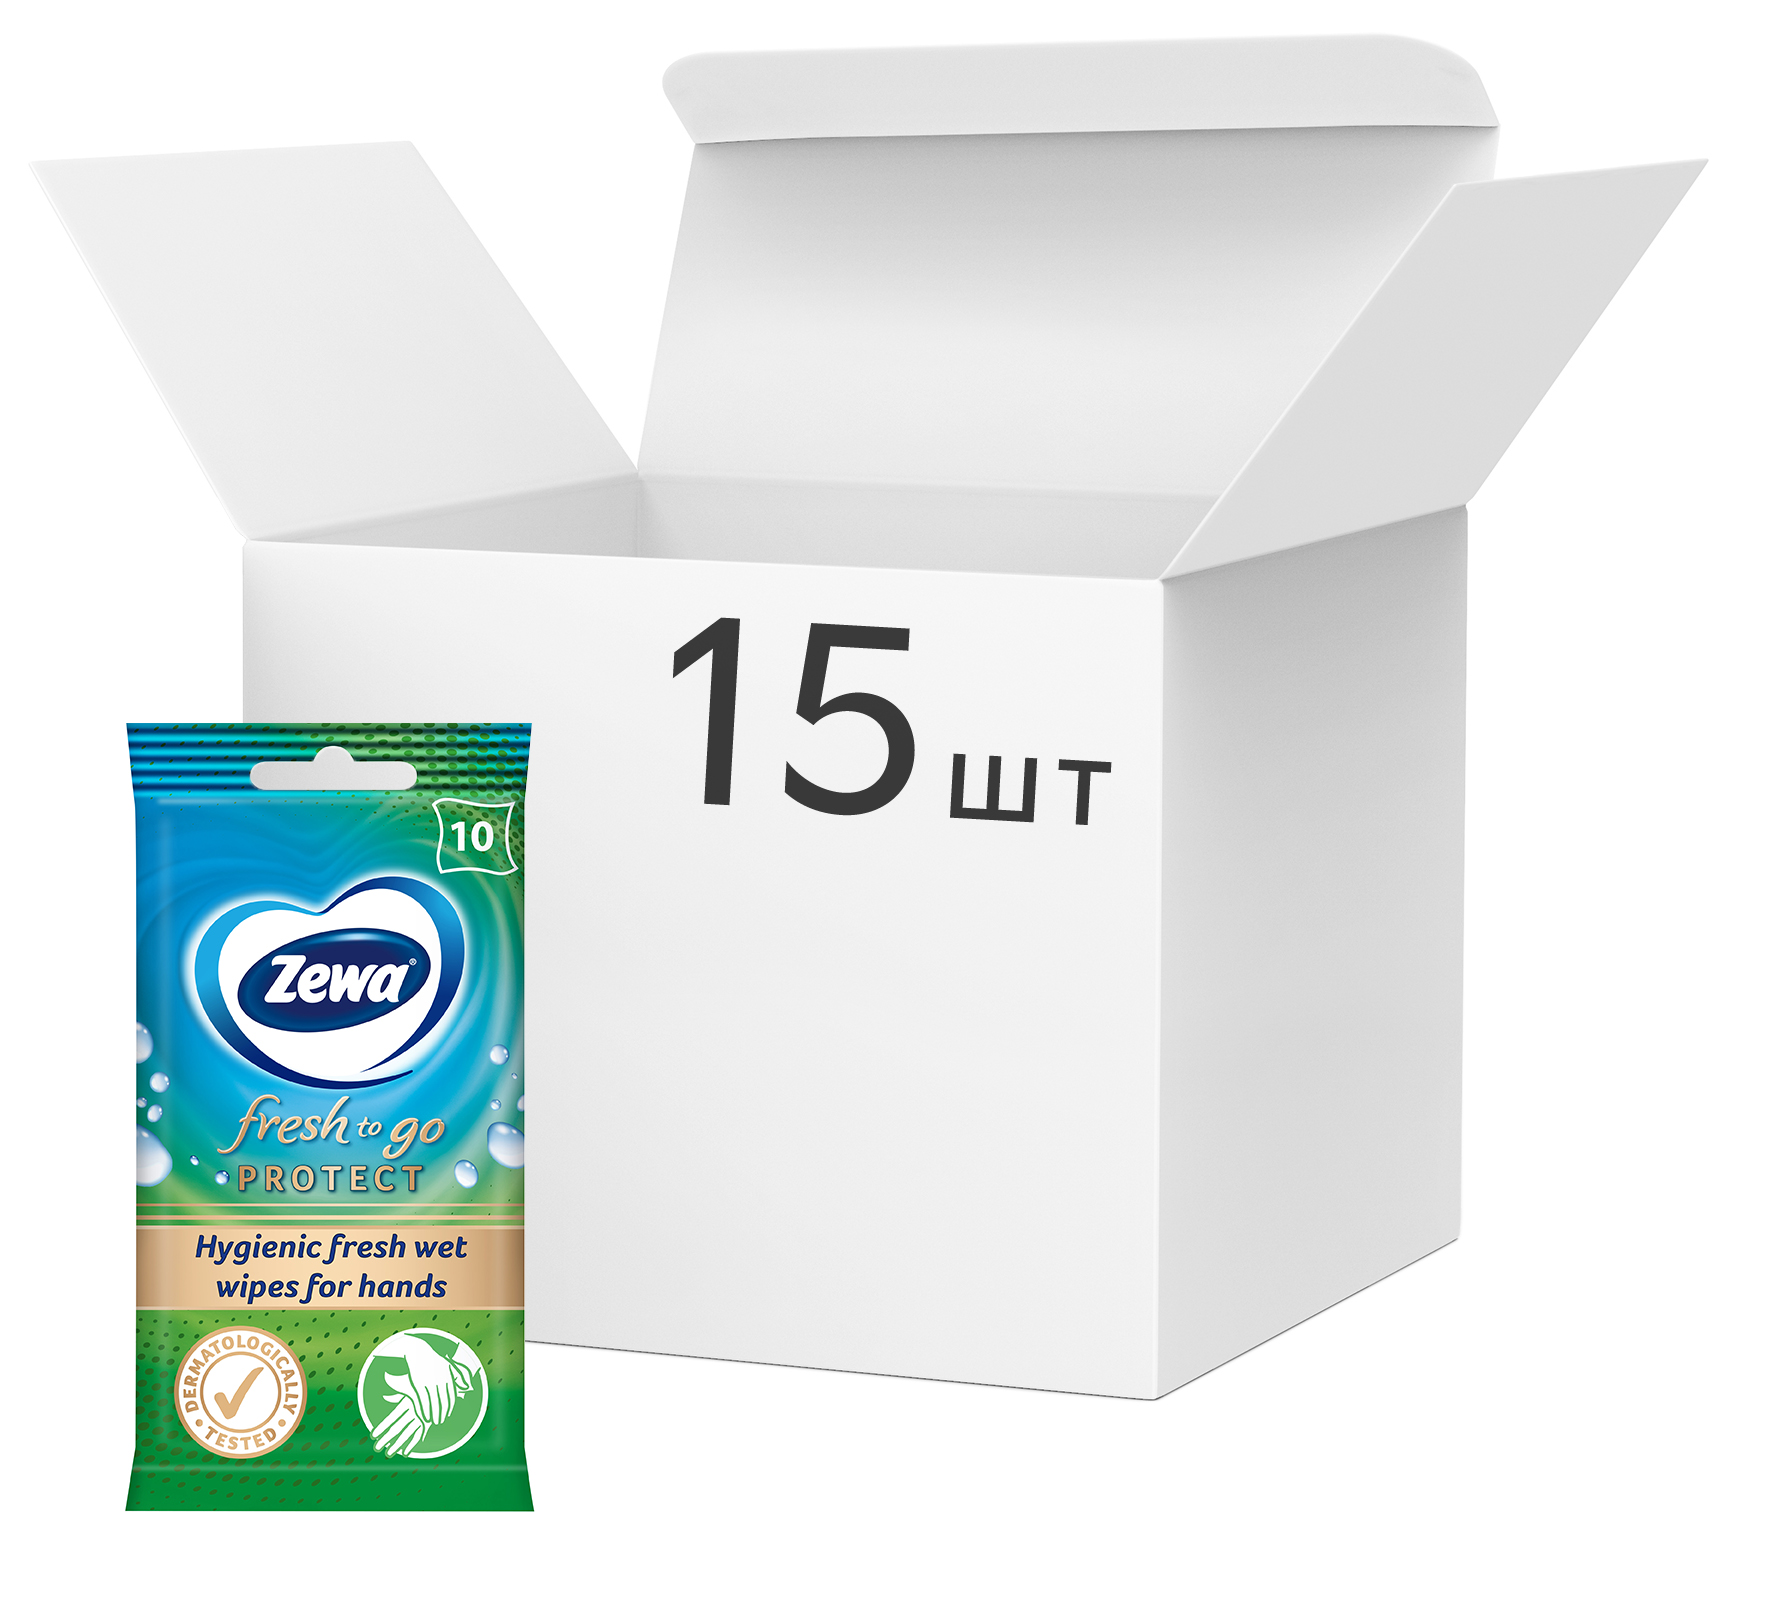 Акция на Упаковка влажных салфеток Zewa Protect 10 шт х 15 упаковок (7322540883756) от Rozetka UA